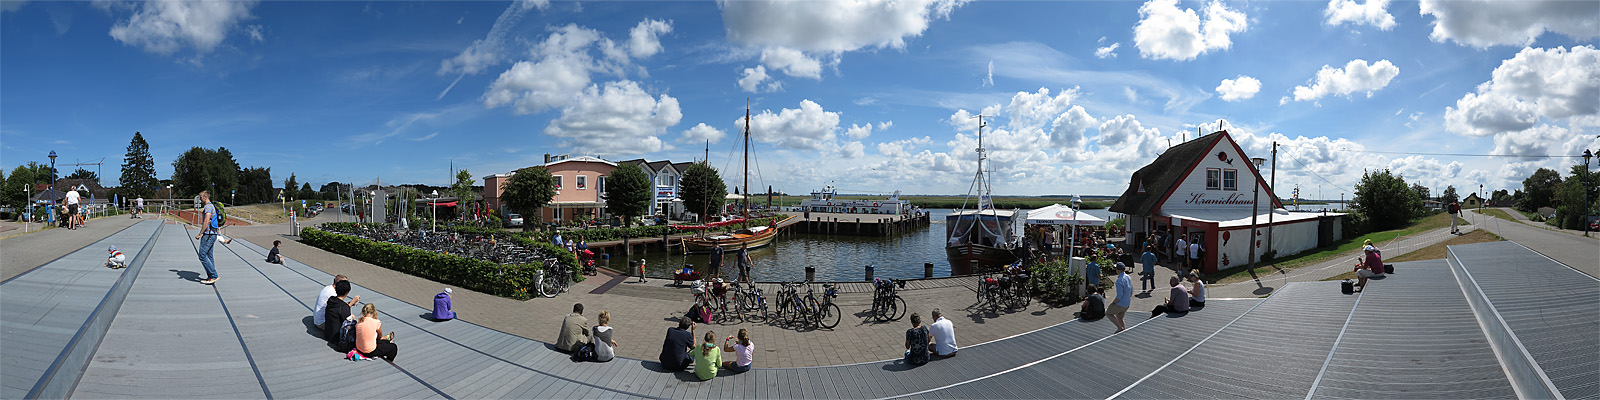 Panorama: Zingst Hafen - Motivnummer: fdz-zin-07